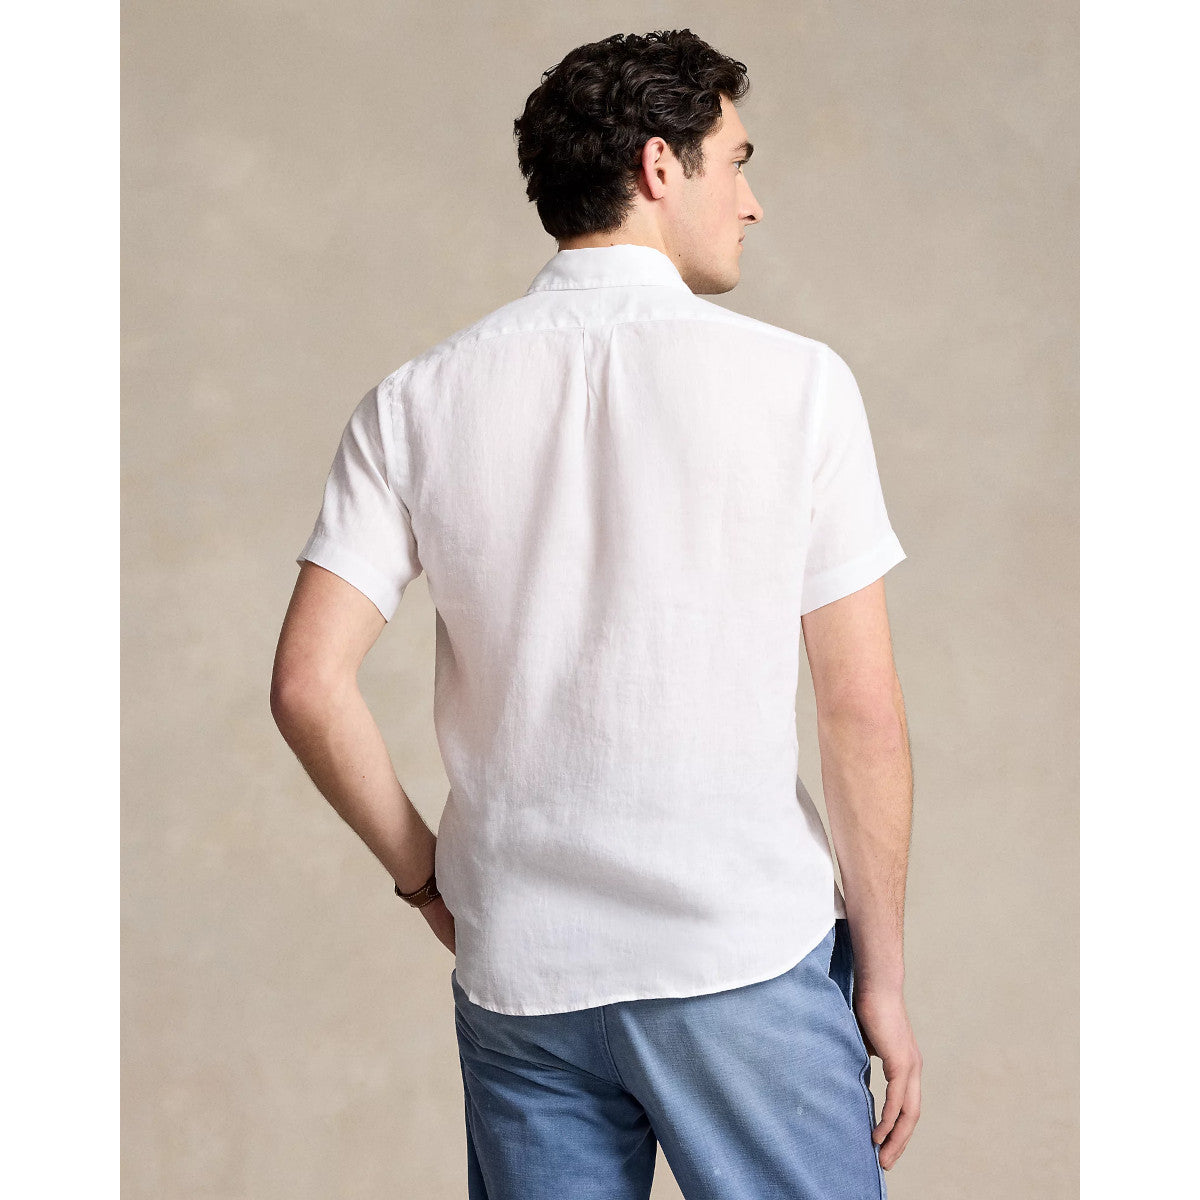 Polo Ralph Lauren SS Linen Shirt 008 White